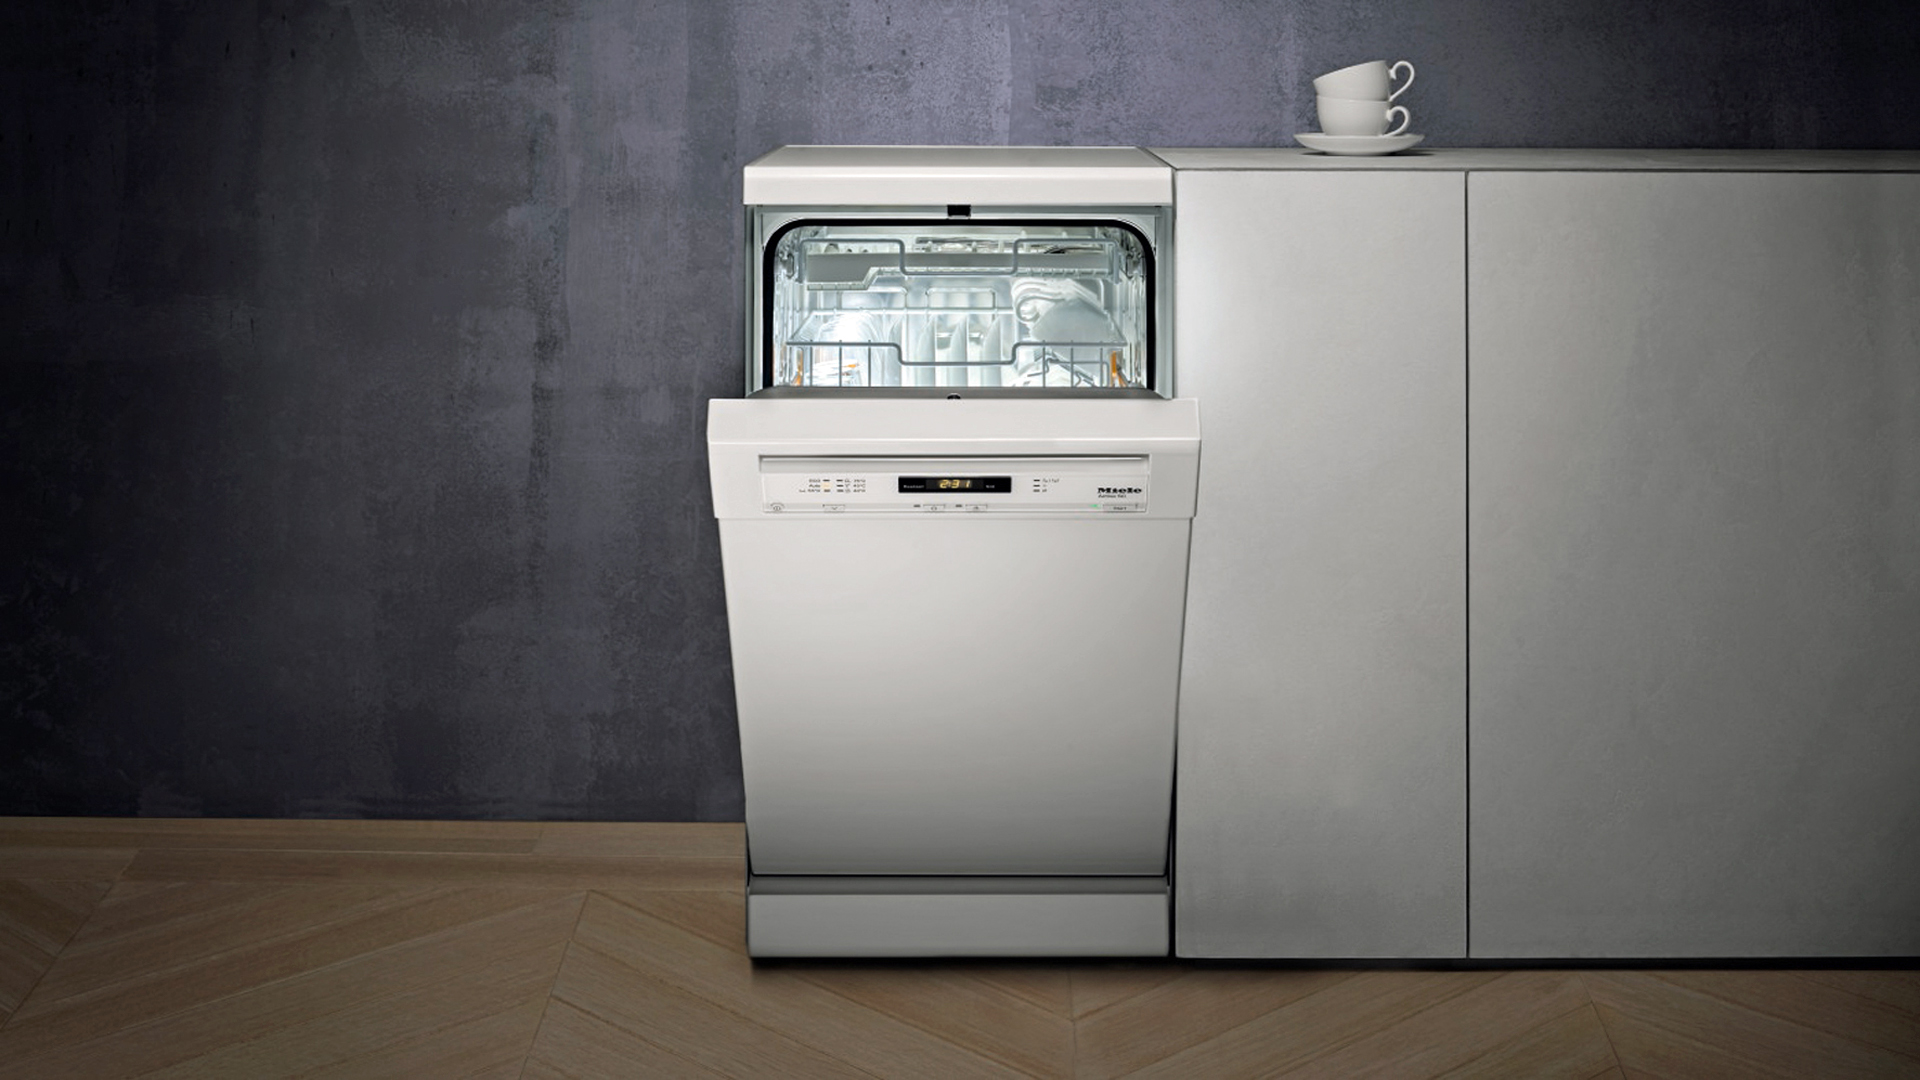 Какие посудомоечные машины хорошие по качеству. Посудомоечная машина Miele 60 см. Посудомоечная машина Miele 45. Машина посудомоечная Miele g4203 SC. Посудомоечная машина Bosch 2020.